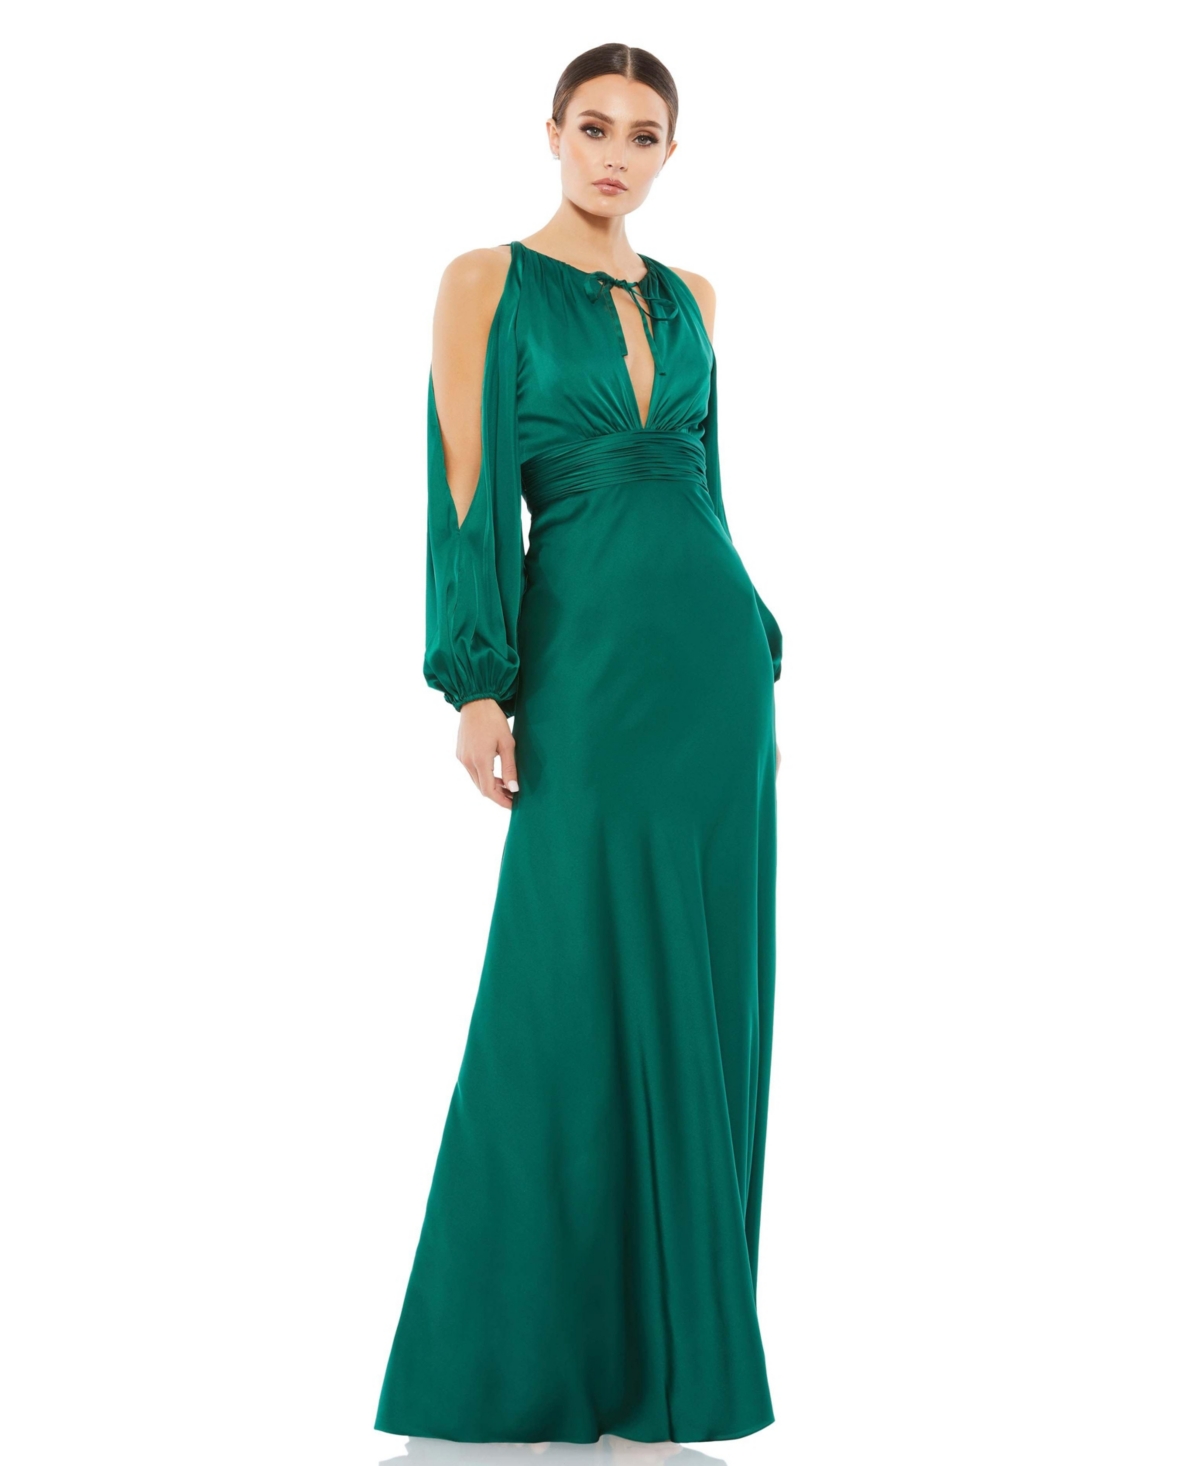 Vintage Evening Dresses, Vintage Formal Dresses Womens Ieena Tied Keyhole Cold Shoulder Bishop Sleeve Gown - Emerald $398.00 AT vintagedancer.com